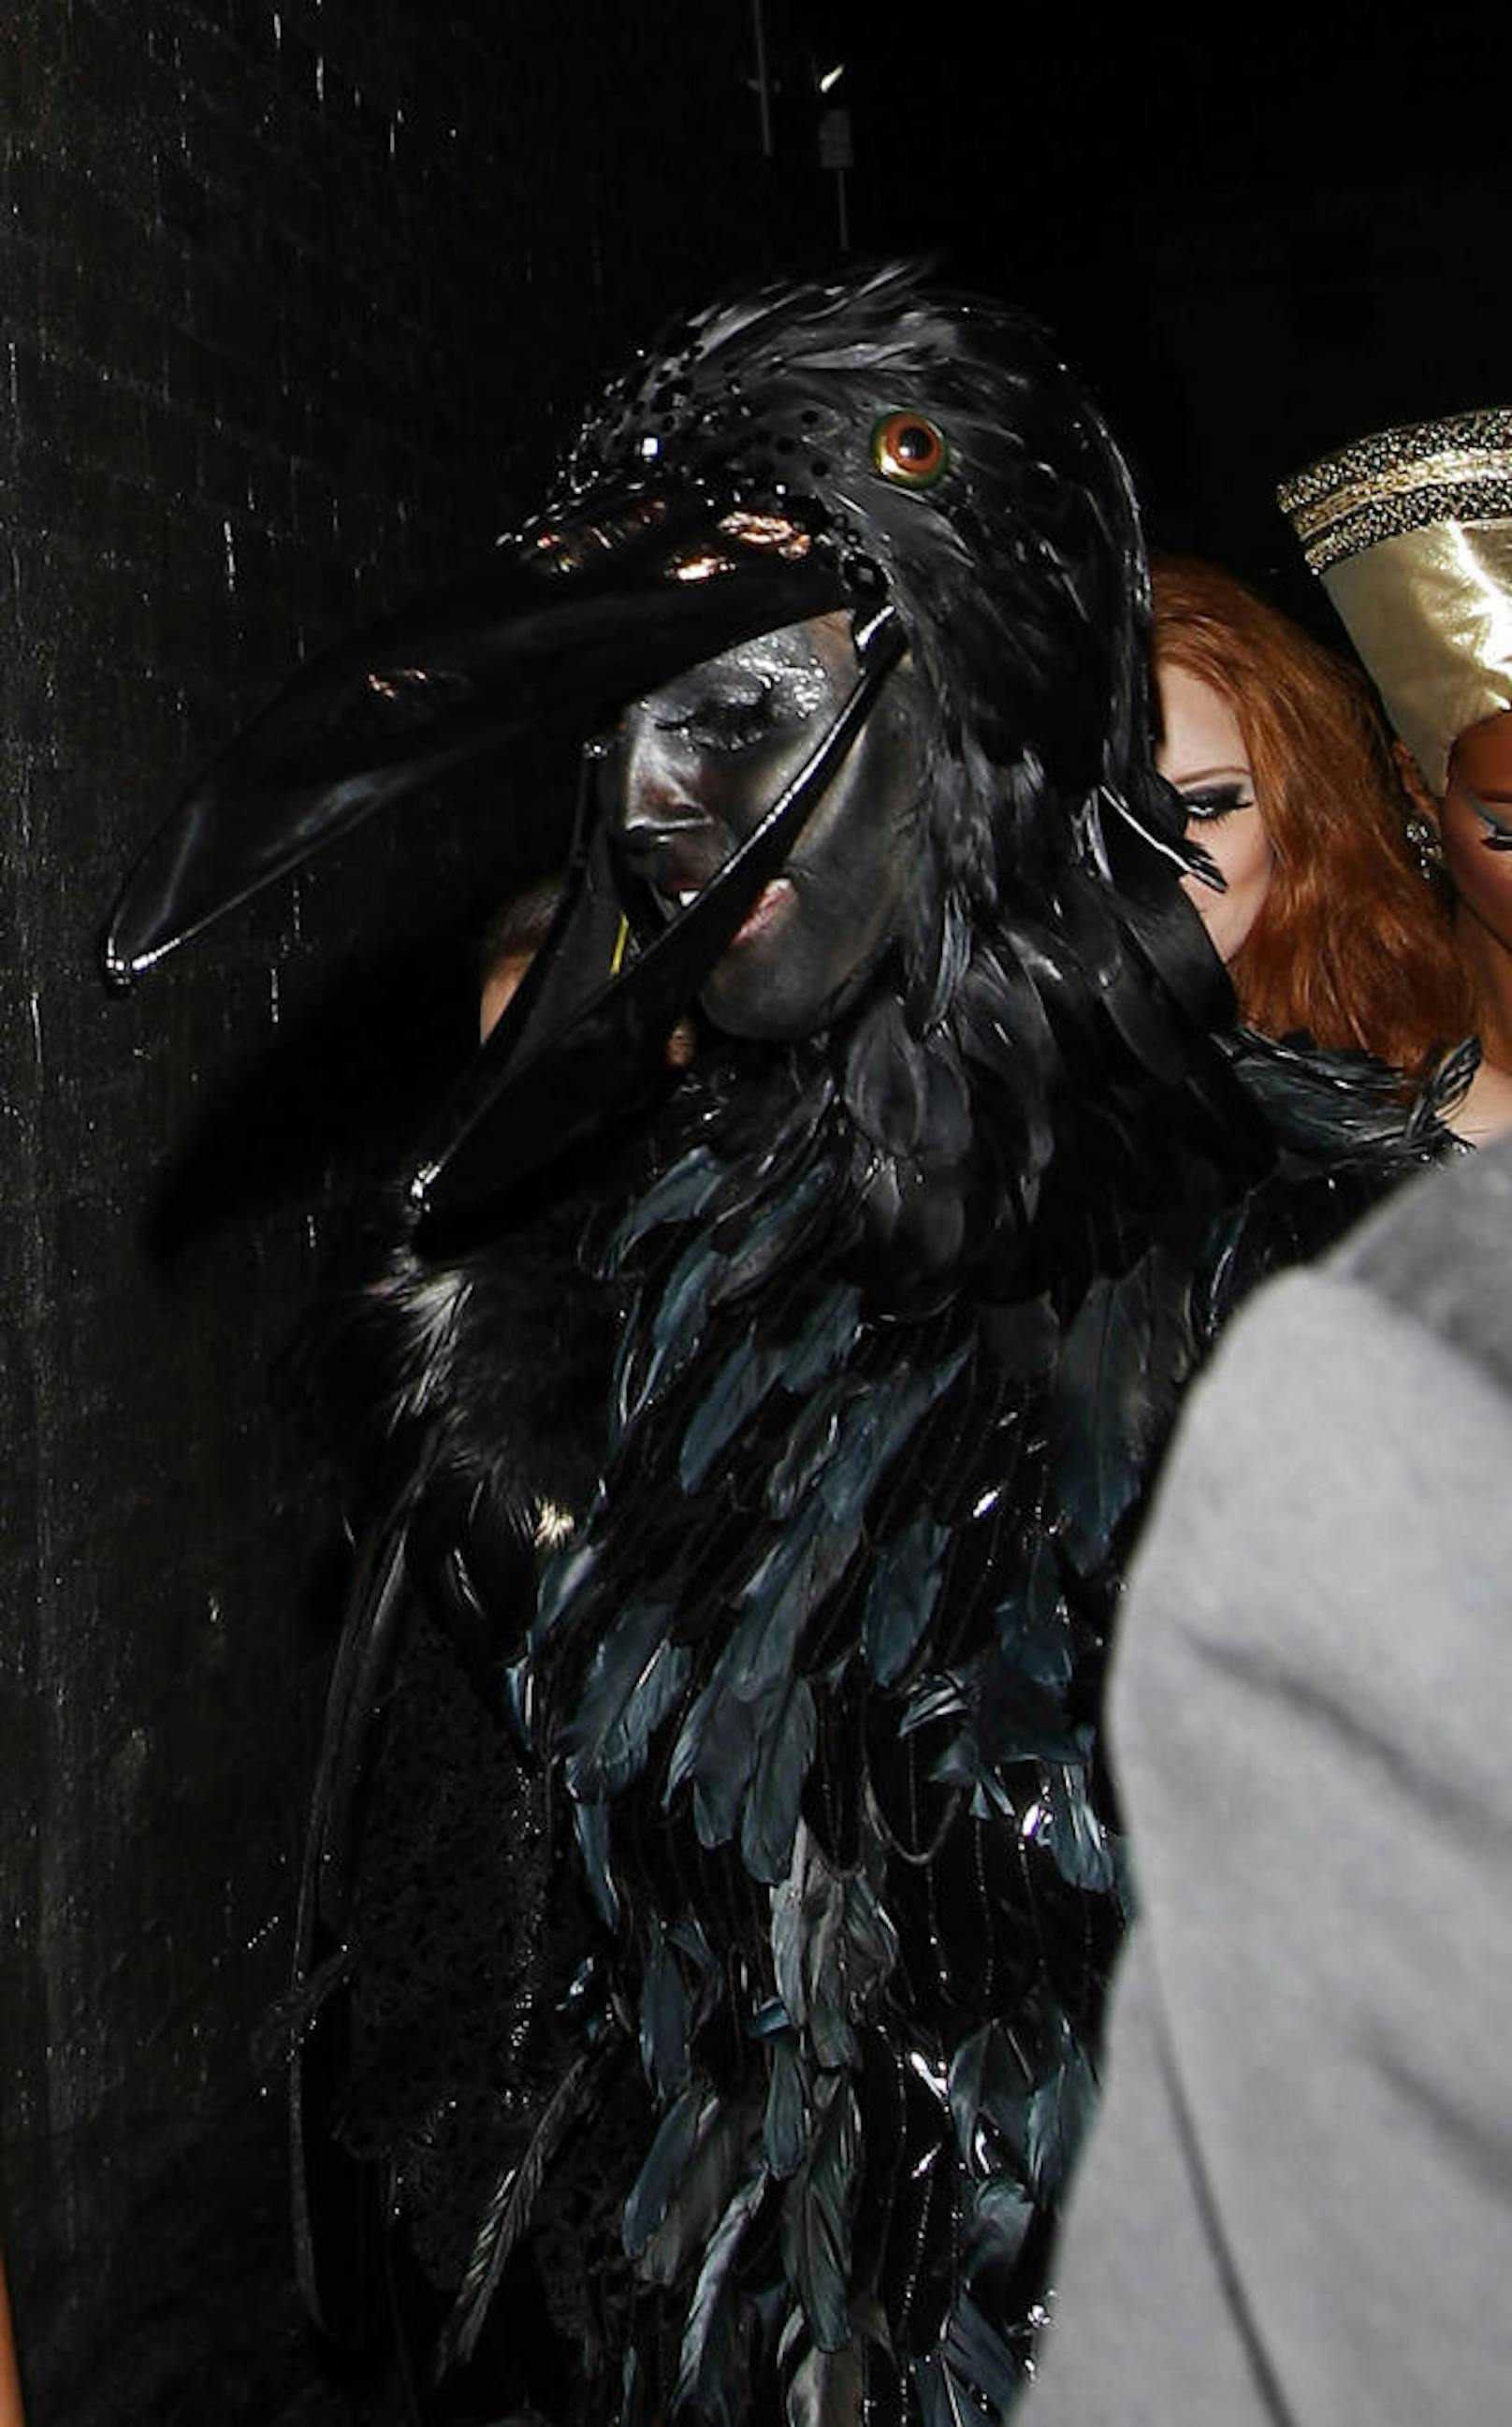 2009 wurde in London gefeiert. Heidi ging als schwarze Krähe - zu der Farbe, griff sie auch wegen der schlechten Fotoqualität nie wieder.